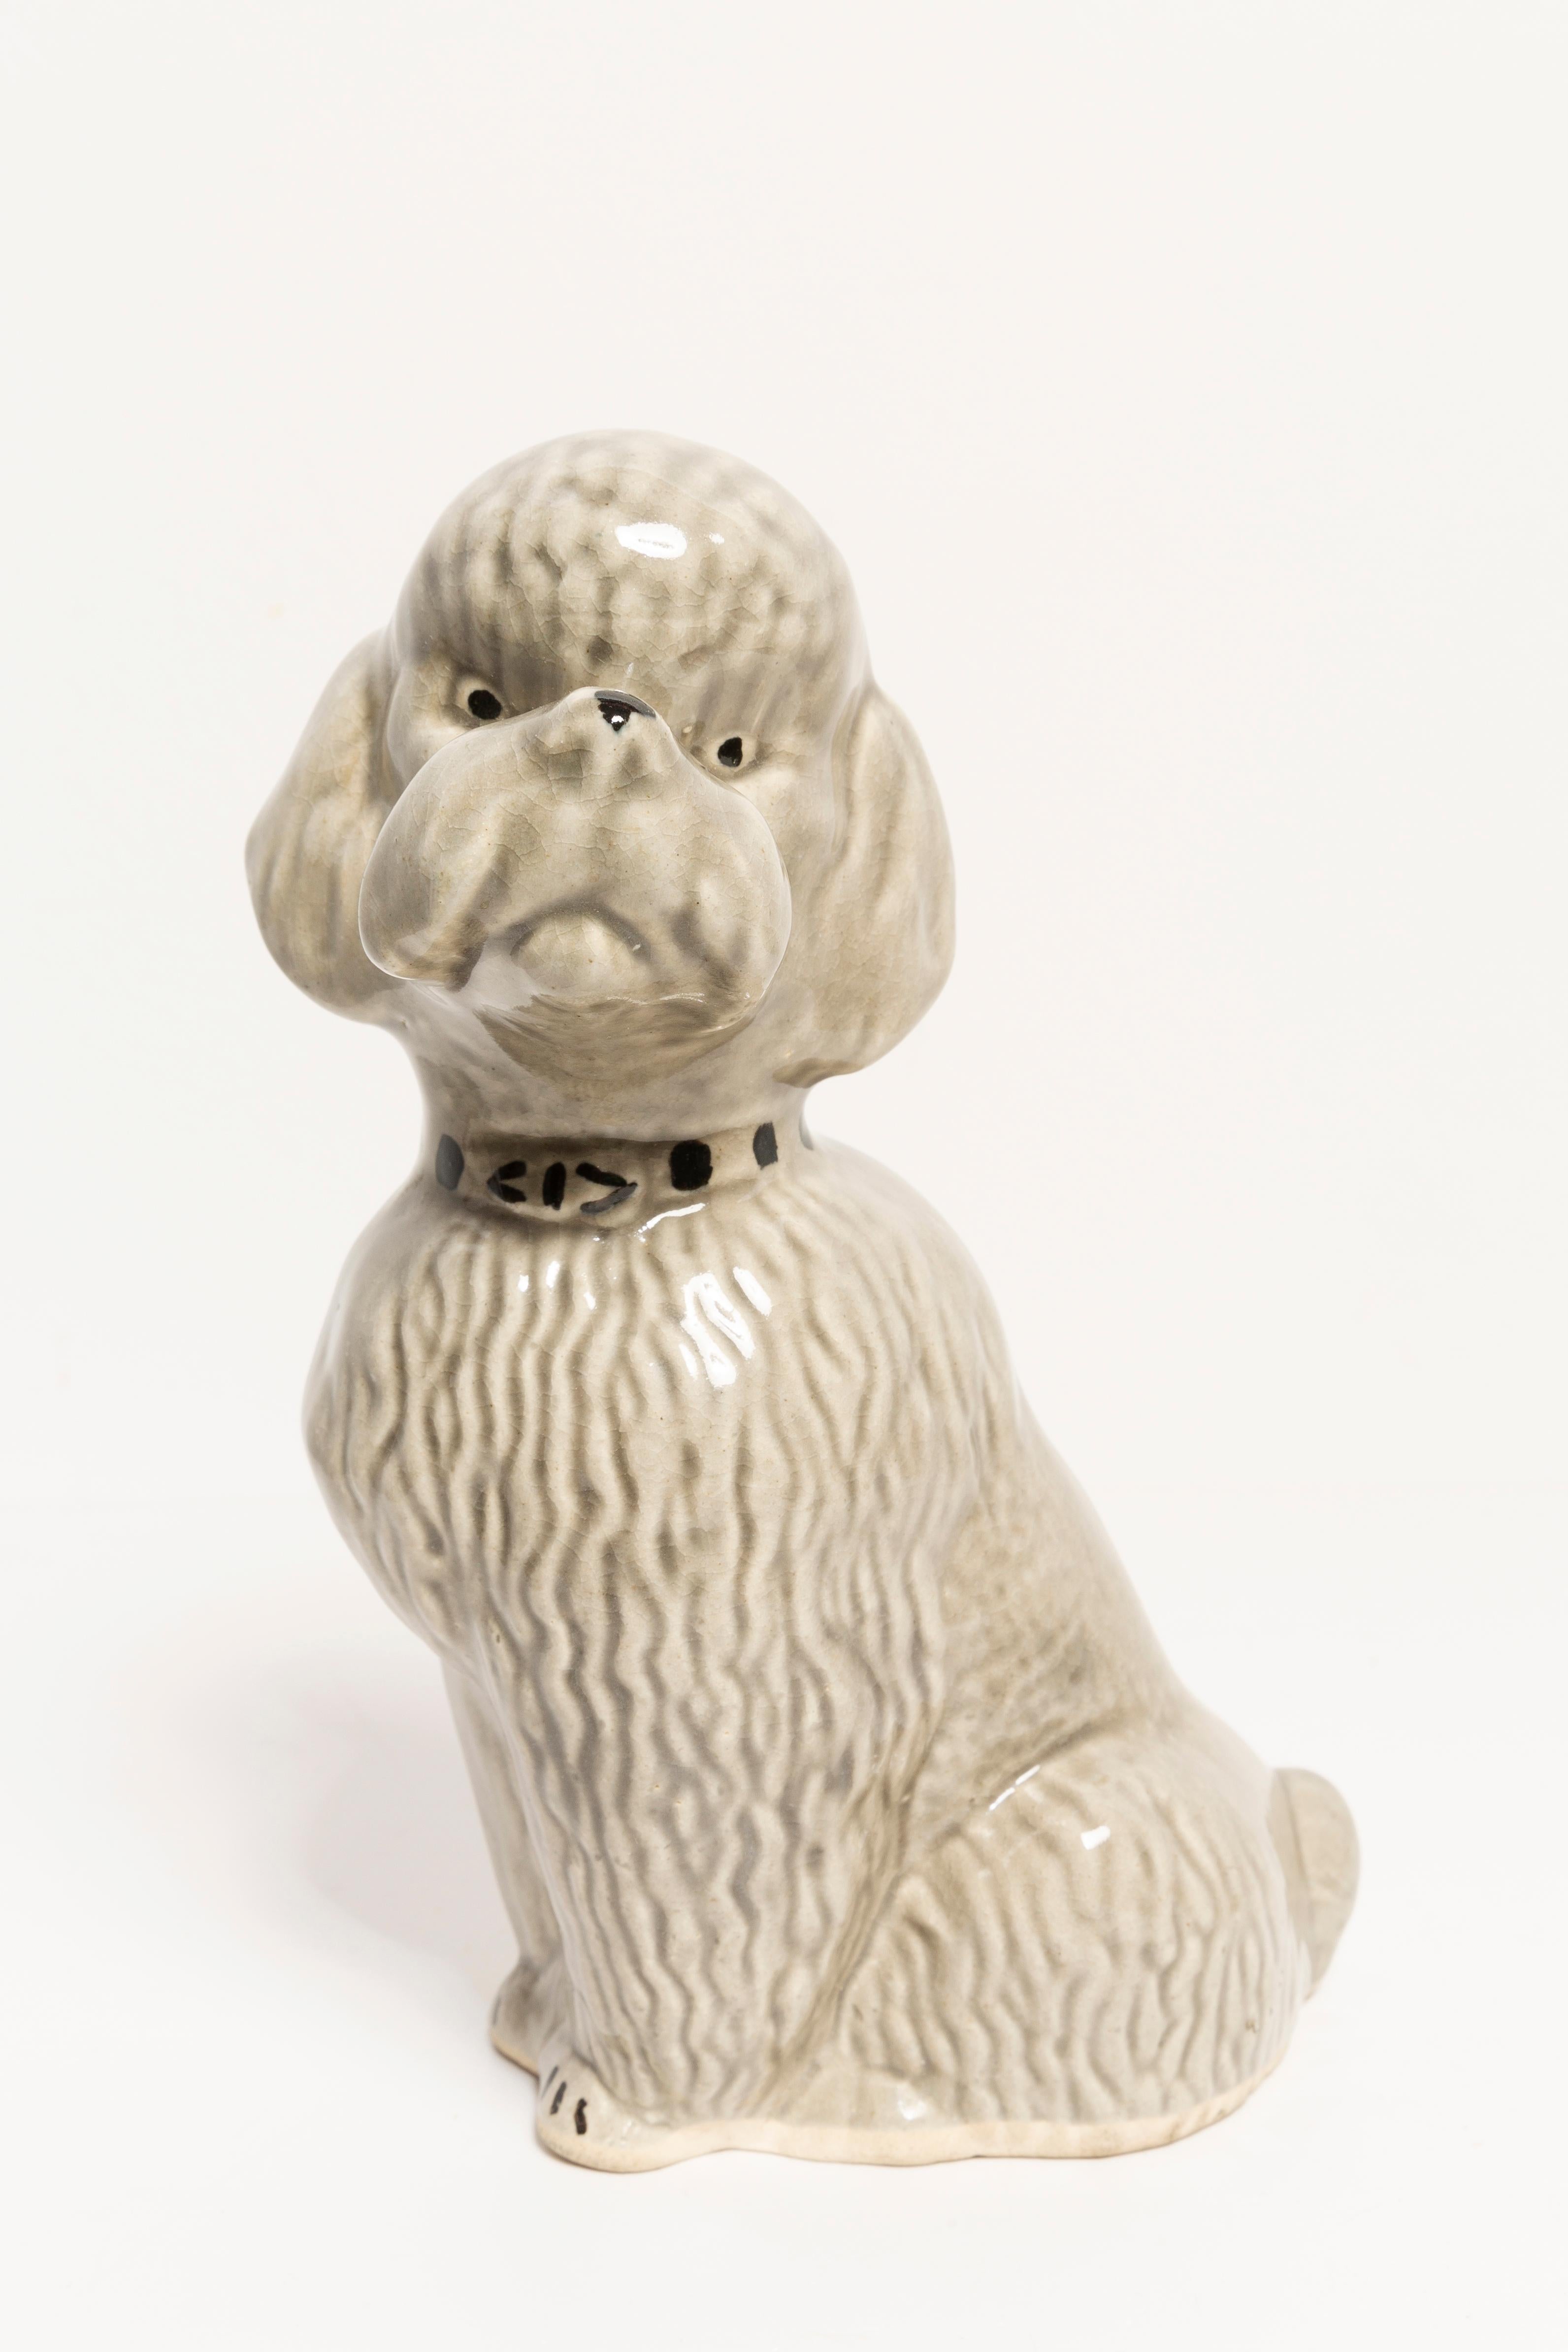 Céramique peinte, très bon état d'origine vintage. Aucun dommage ou fissure. Une sculpture décorative magnifique et unique. La sculpture du chien caniche gris a été produite en Italie. Un seul chien disponible.